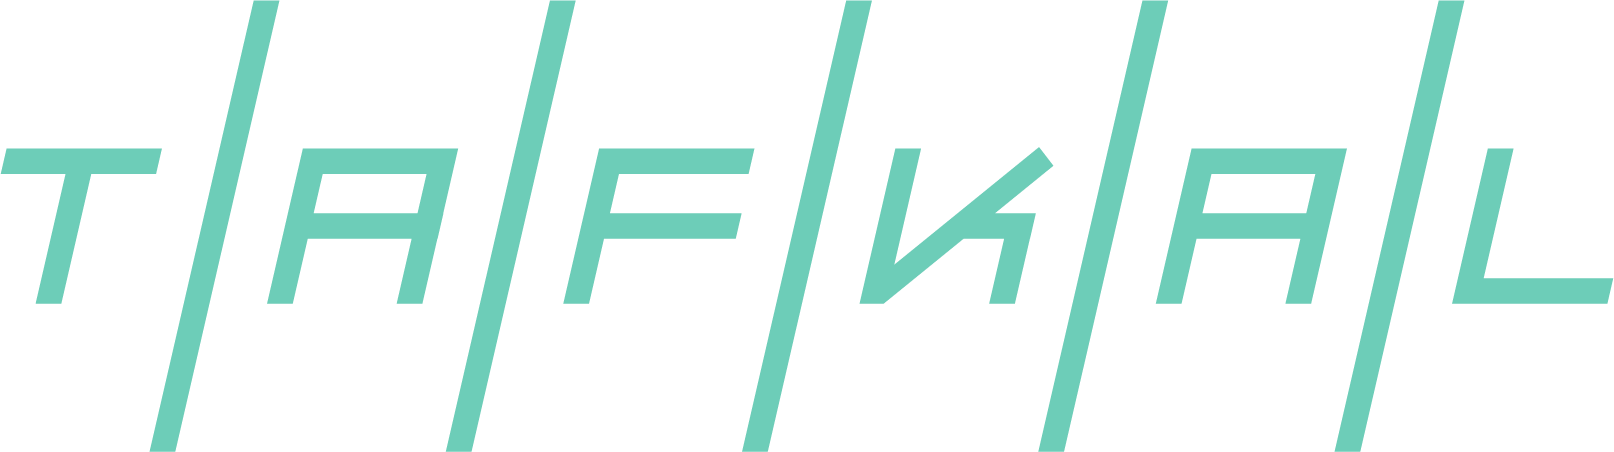 tafkal.png Logo